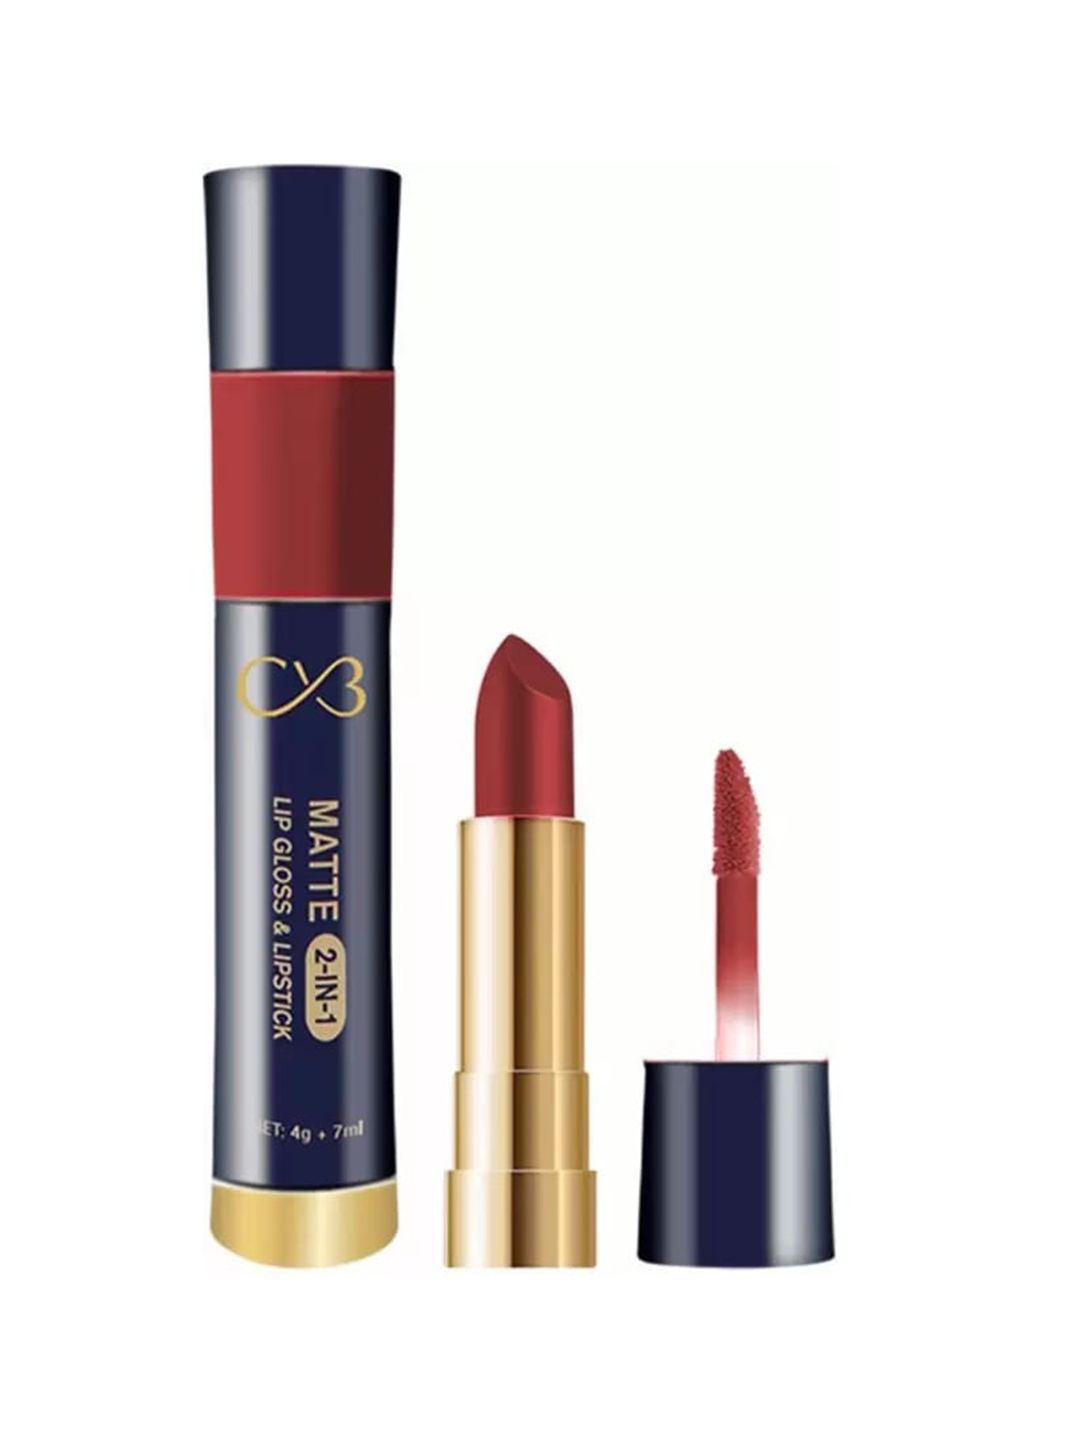 CVB Matte 2-In-1 Lip Gloss & Velvet Lipstick - Icy Orange Price in India